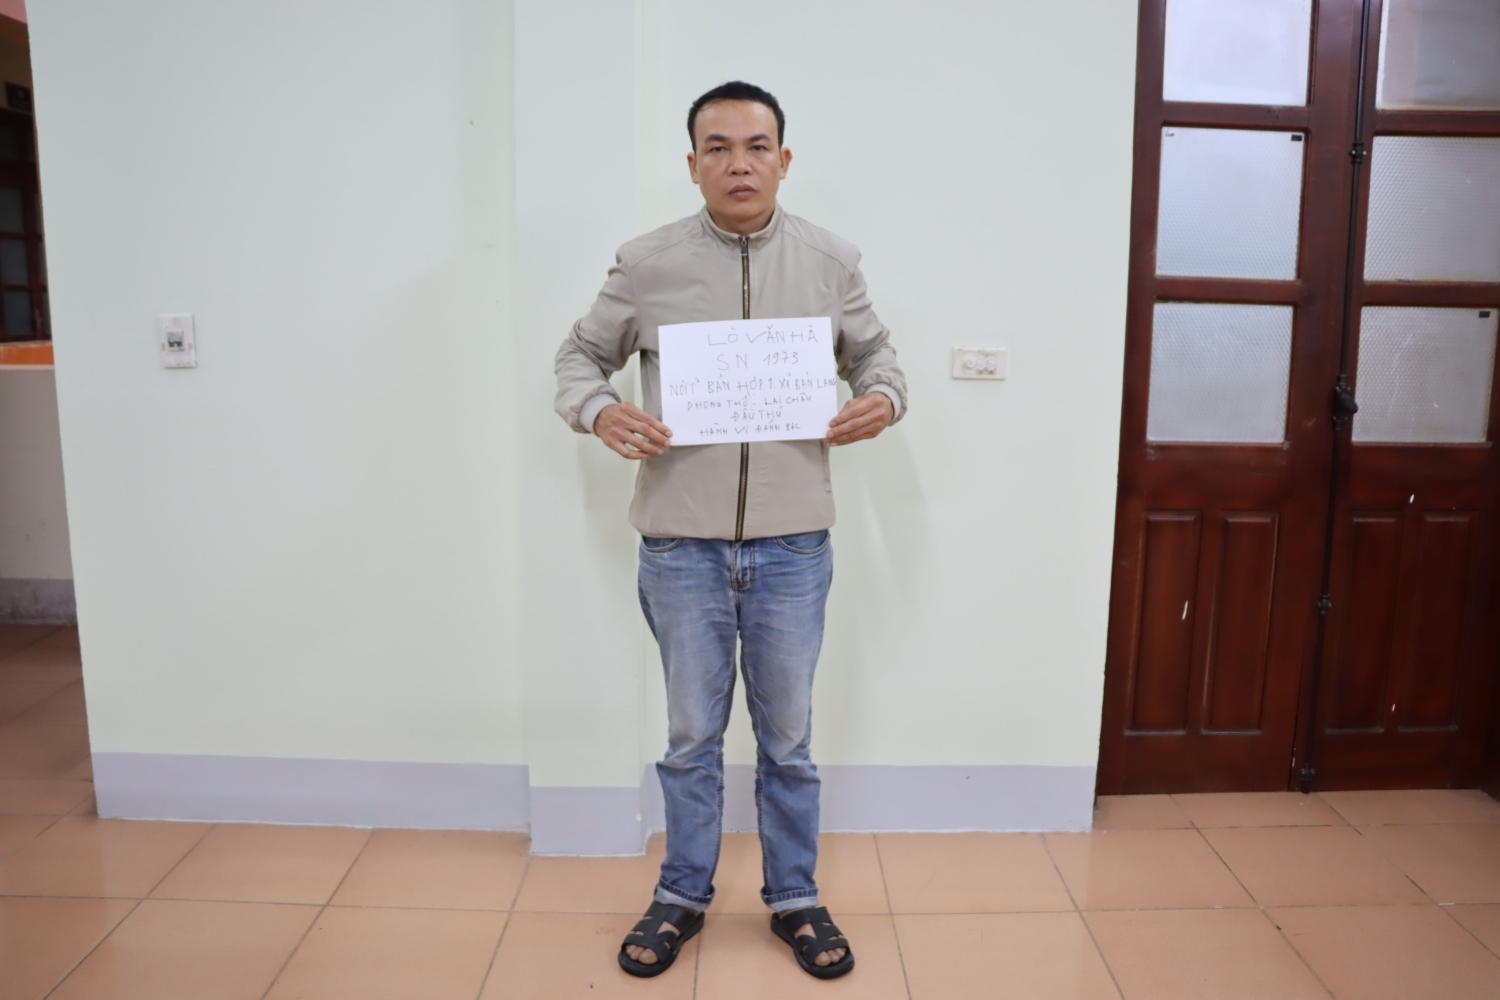 Bắt thêm 01 đối tượng về hành vi đánh bạc tại xã Bản Lang, huyện Phong Thổ